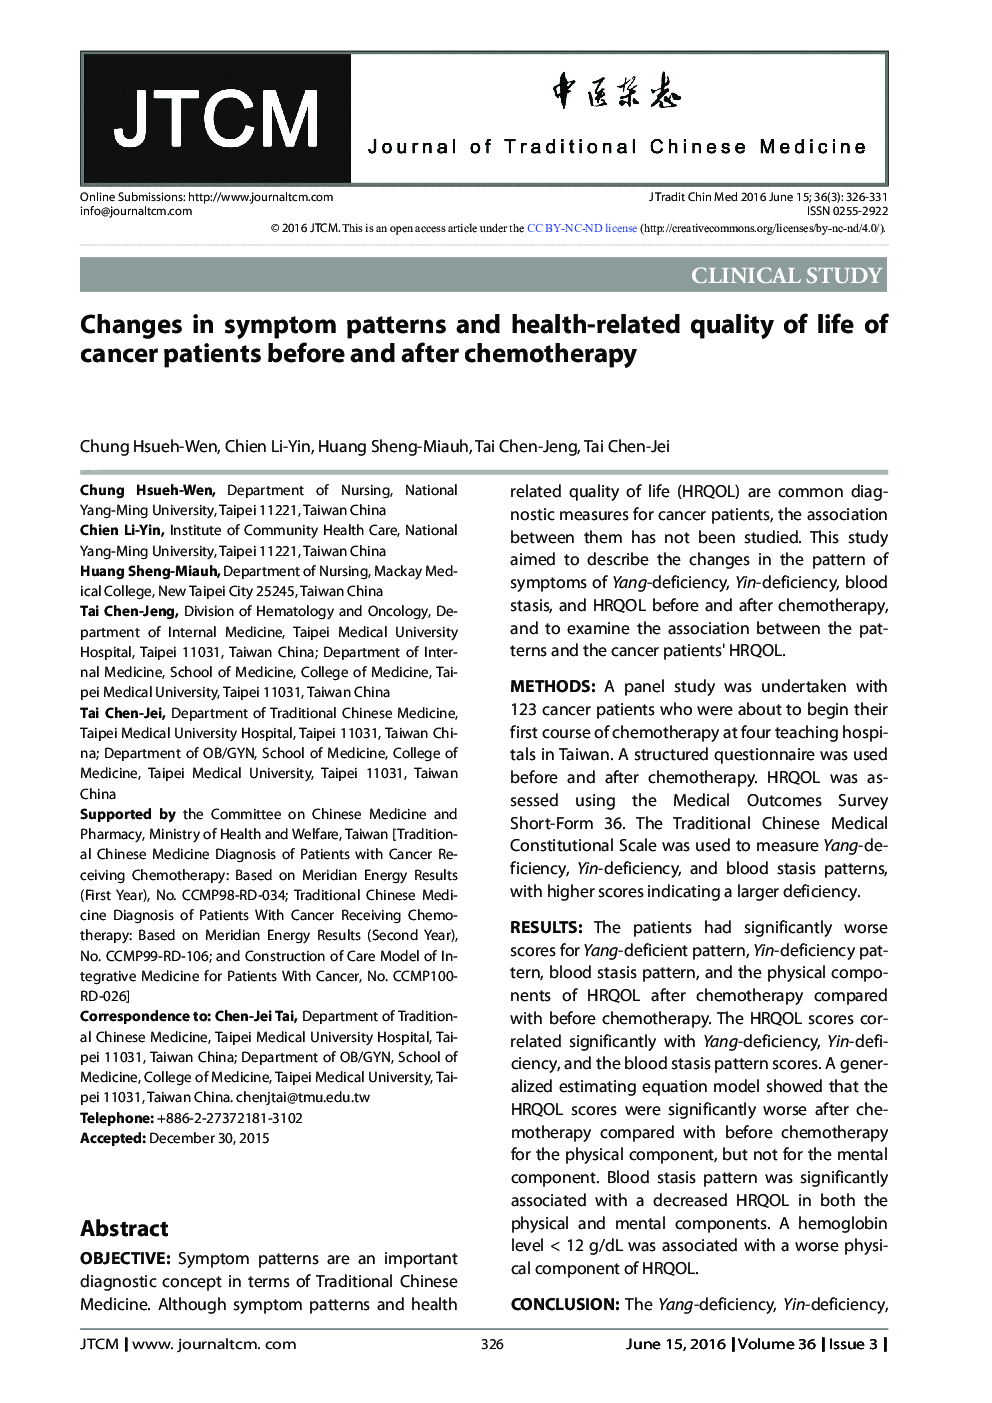 تغییرات در الگوهای علائم و کیفیت زندگی مرتبط با سلامت بیماران سرطانی قبل و بعد از شیمی درمانی